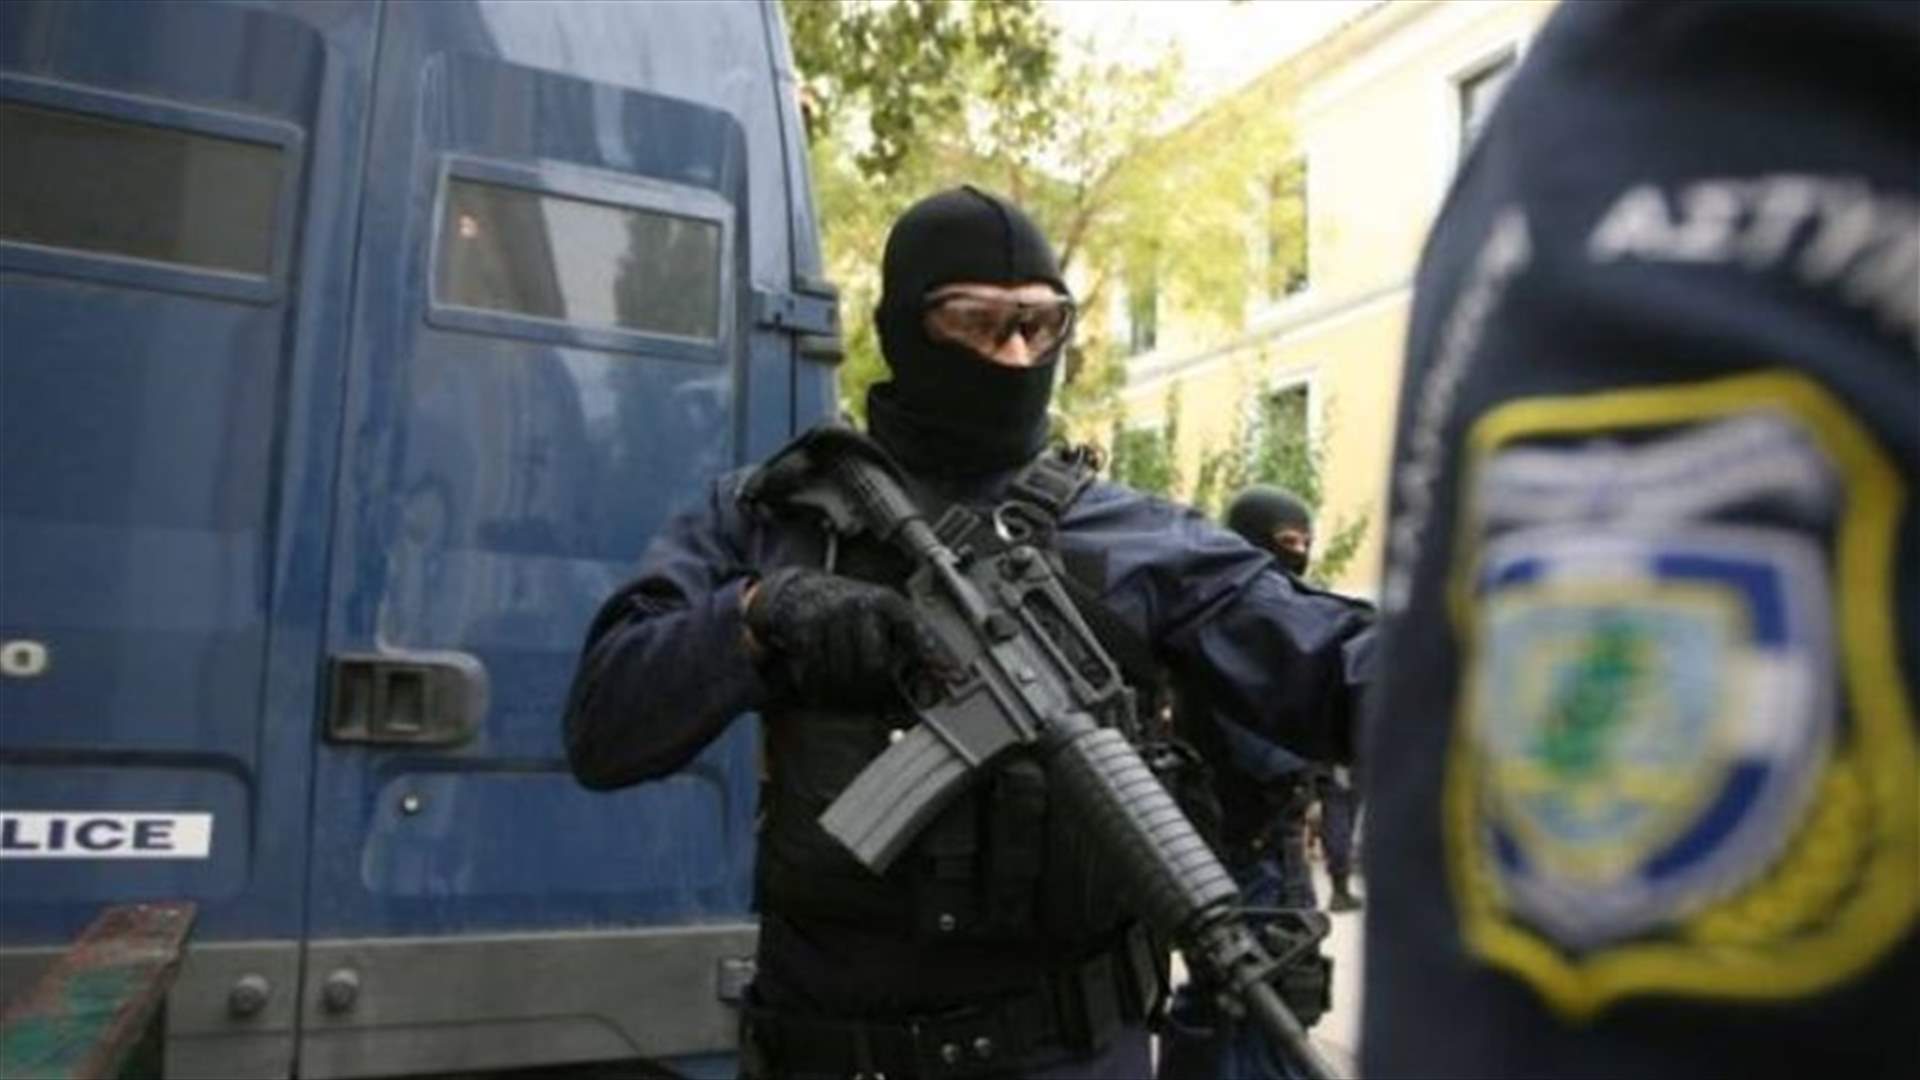 القاء قنبلة على السفارة الفرنسية في اليونان 